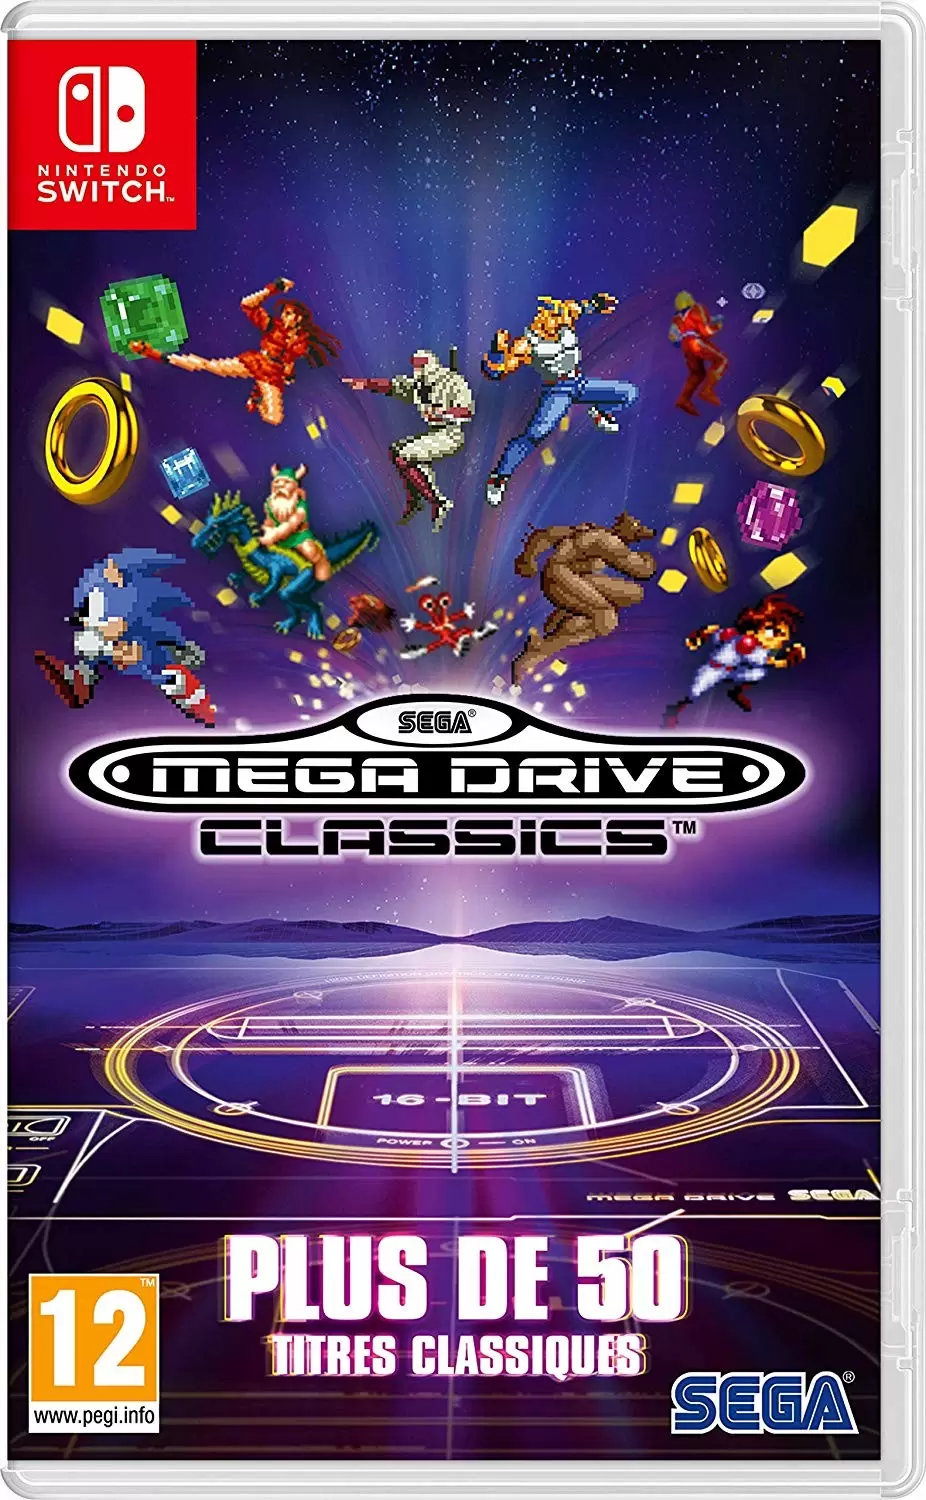 Nintendo Switch Games - Sega Mega Drive Classics